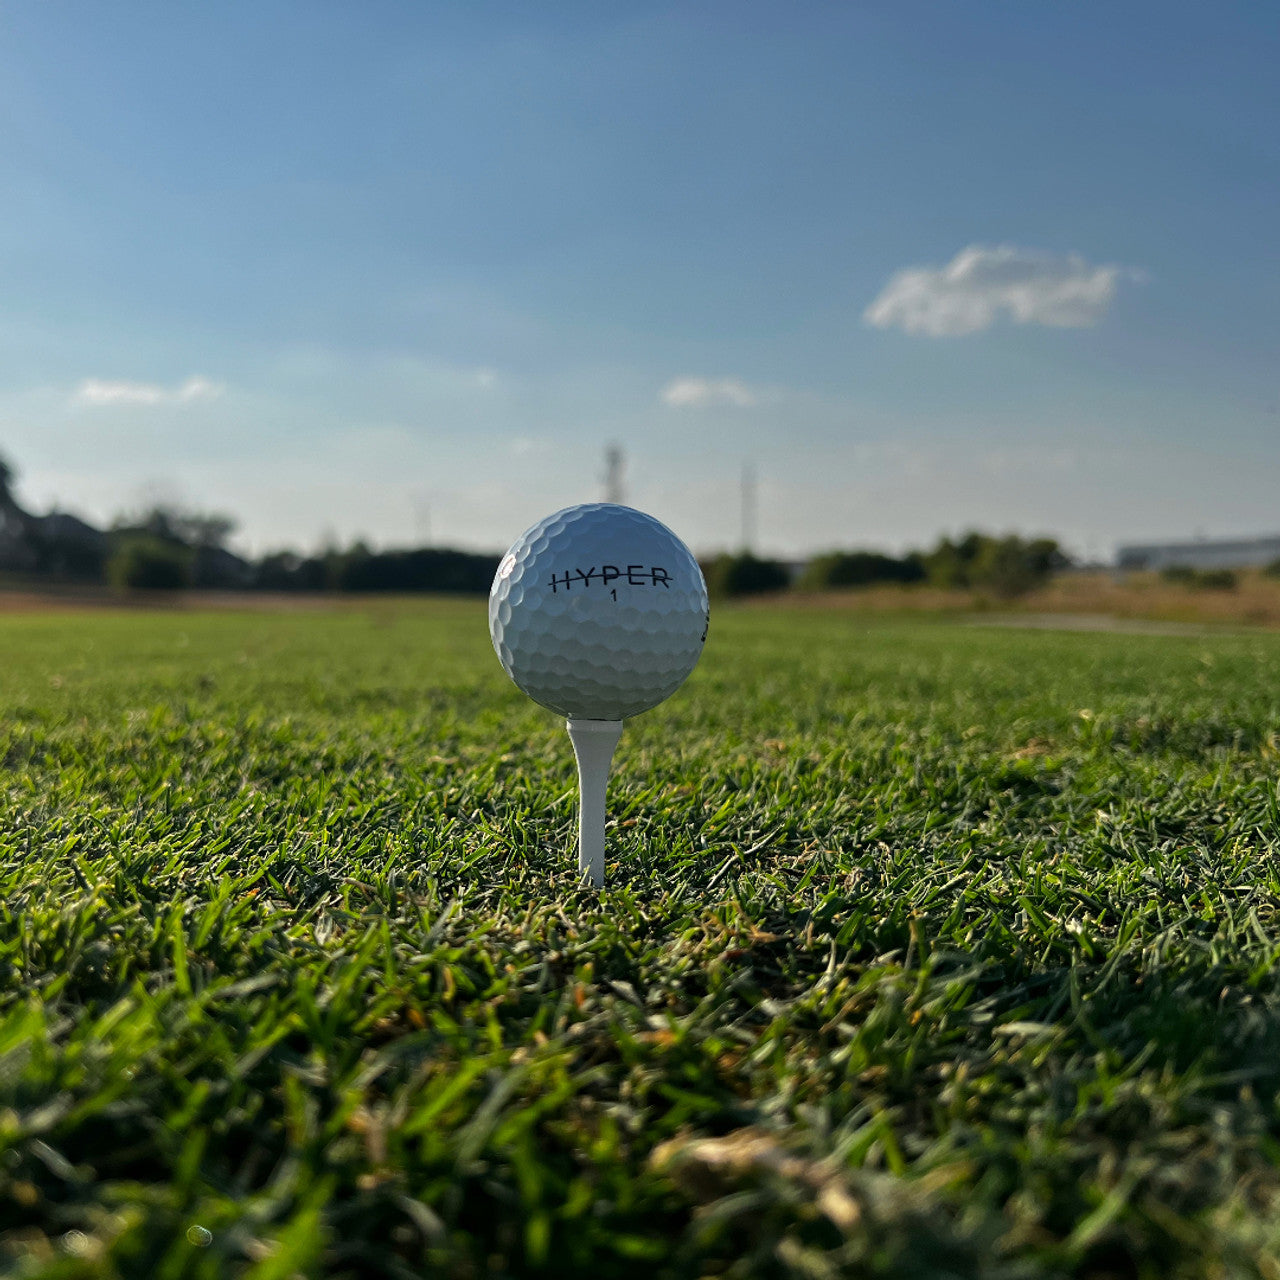 HYPER One Golf Balls (12 Pack)